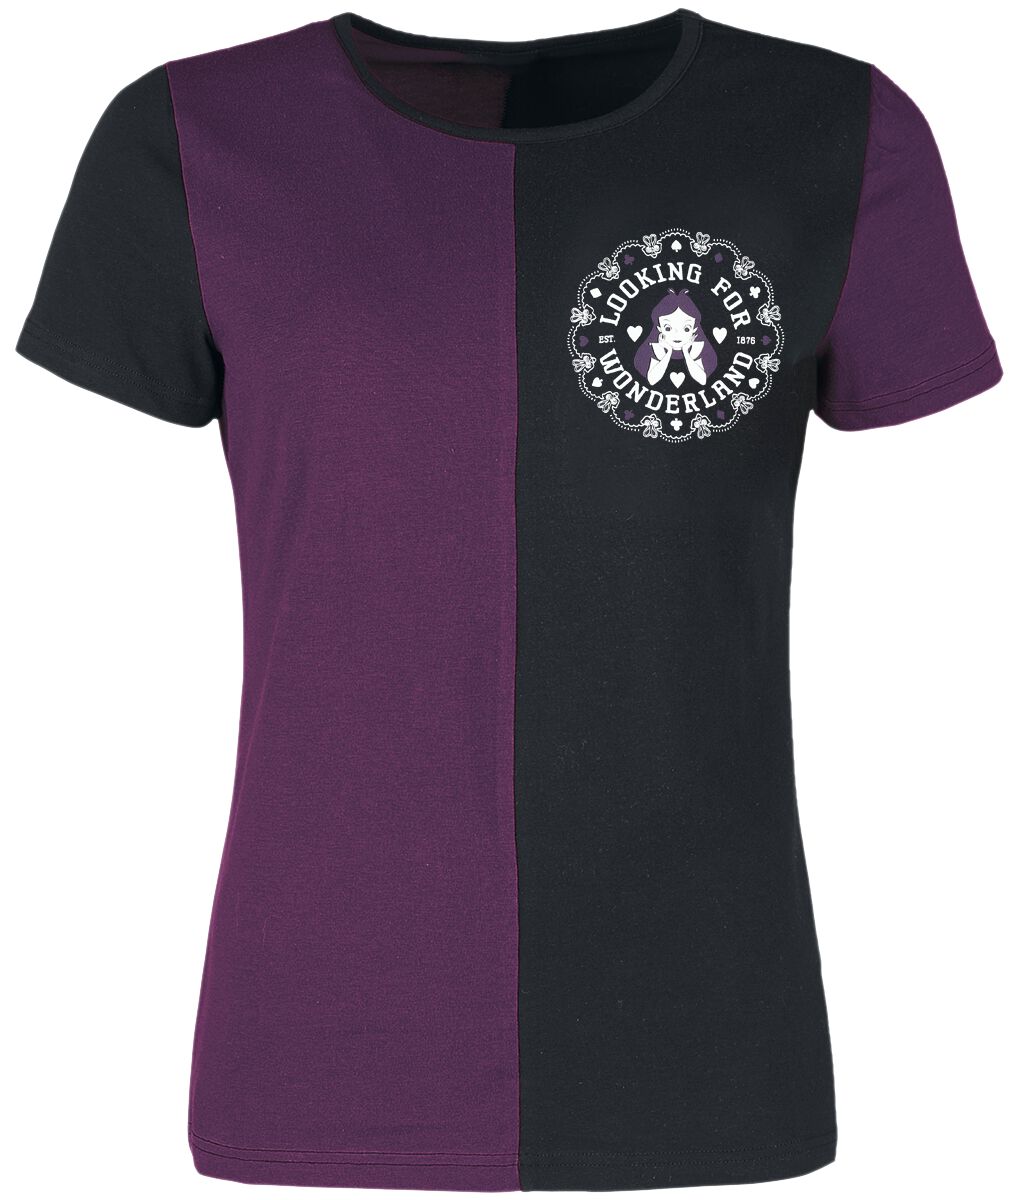 Alice im Wunderland - Disney T-Shirt - University - S bis L - für Damen - Größe M - lila/schwarz  - Lizenzierter Fanartikel